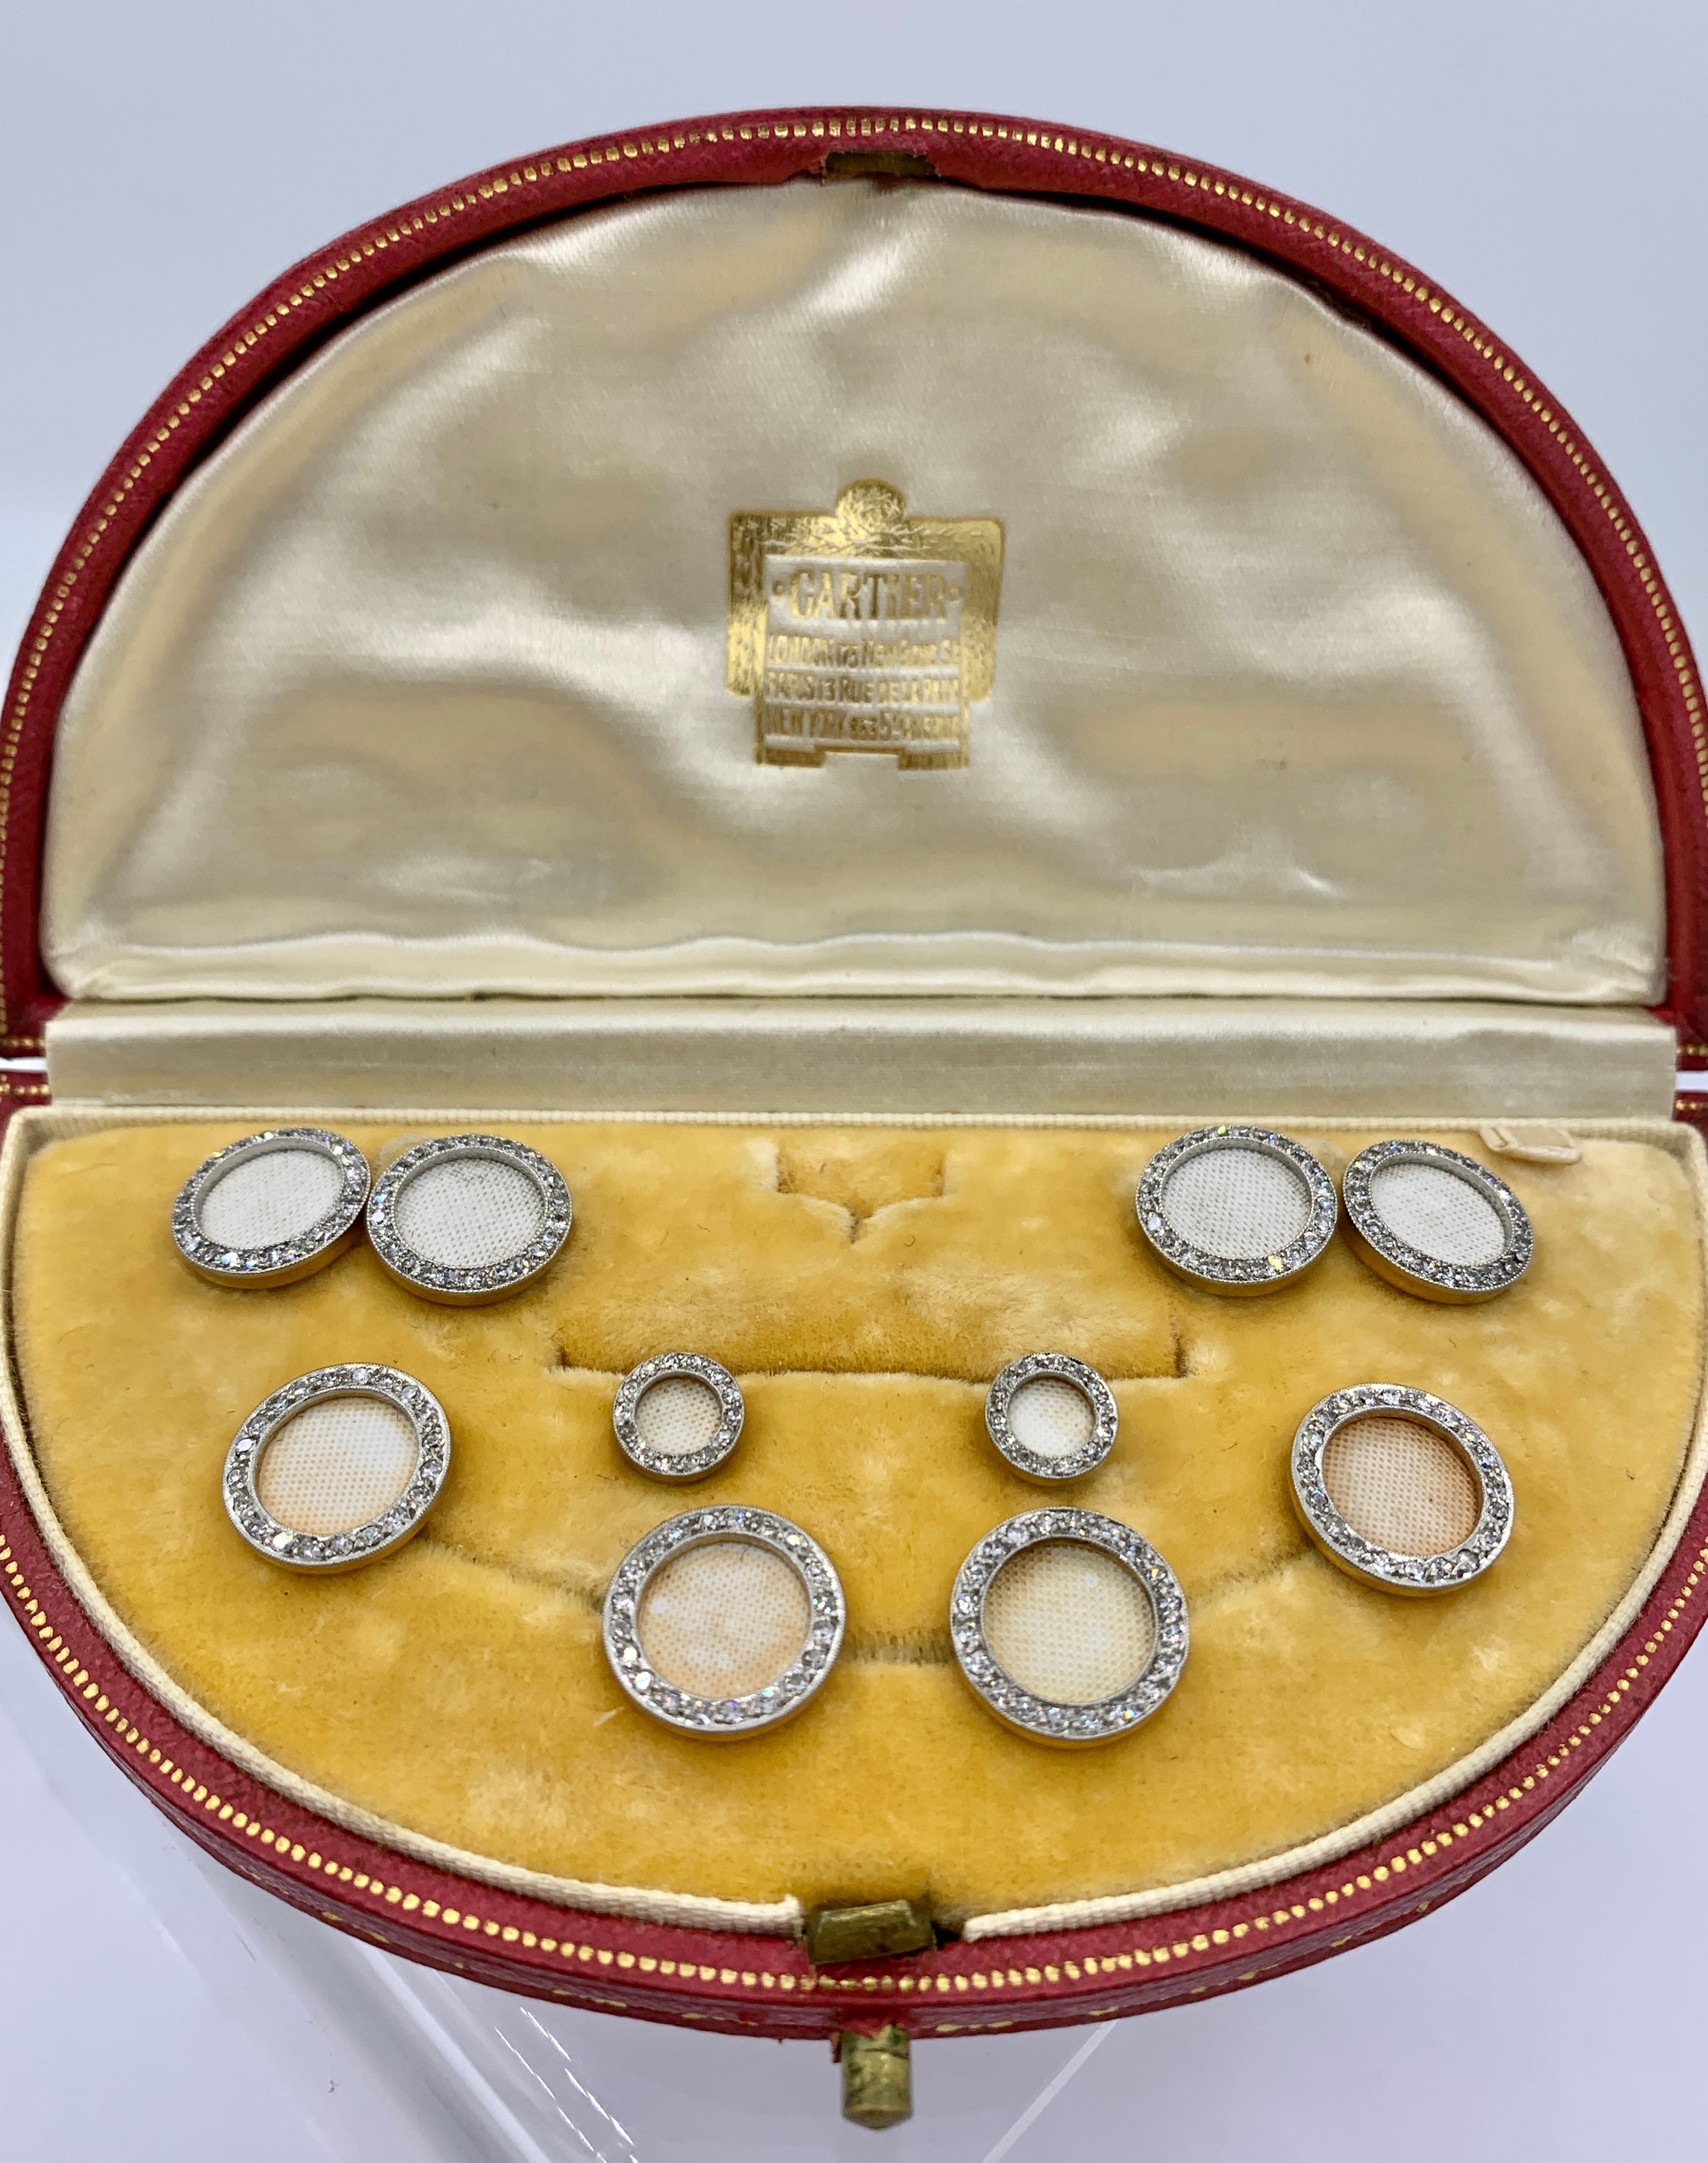 Dies ist ein außergewöhnliches Museum Qualität Cartier Französisch Diamant und Emaille Dress Set mit Manschettenknöpfen, Ohrstecker und Knöpfe in Platin und 18 Karat Gold und aus der Zeit des Art Deco, CIRCA 1910, und in der ursprünglichen Cartier